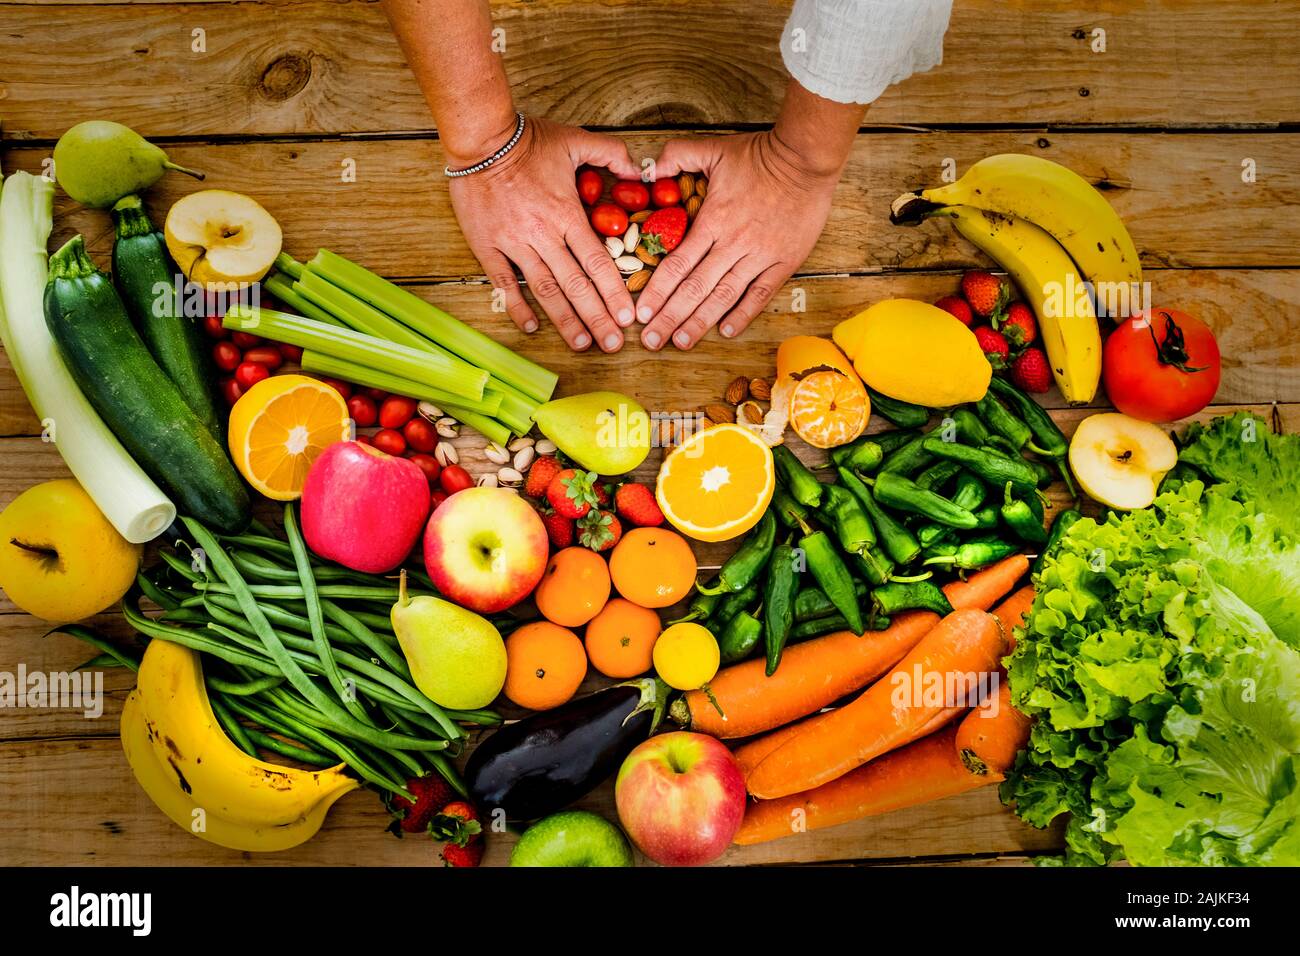 Légumes frais et de saison et de fruits sur une table woodem avec les gens femme mains faisant l'amour avec elle - Foyer de vie sain manger concept pour vegeta Banque D'Images